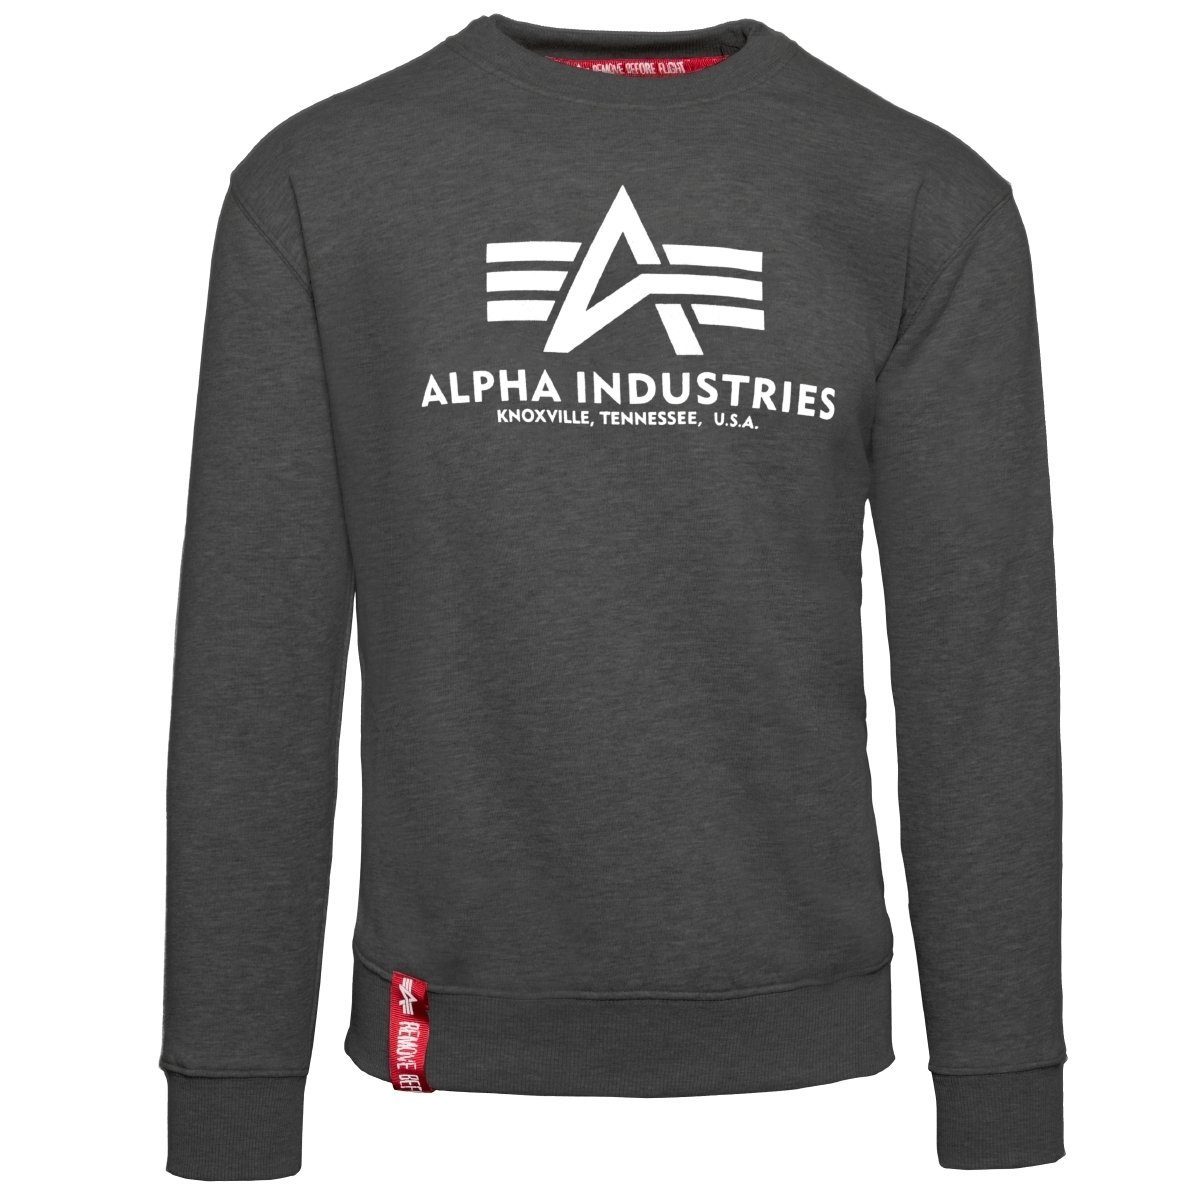 Super beliebt und 100 % Qualität garantiert! Alpha Industries Sweatshirt Basic Sweater grau Herren